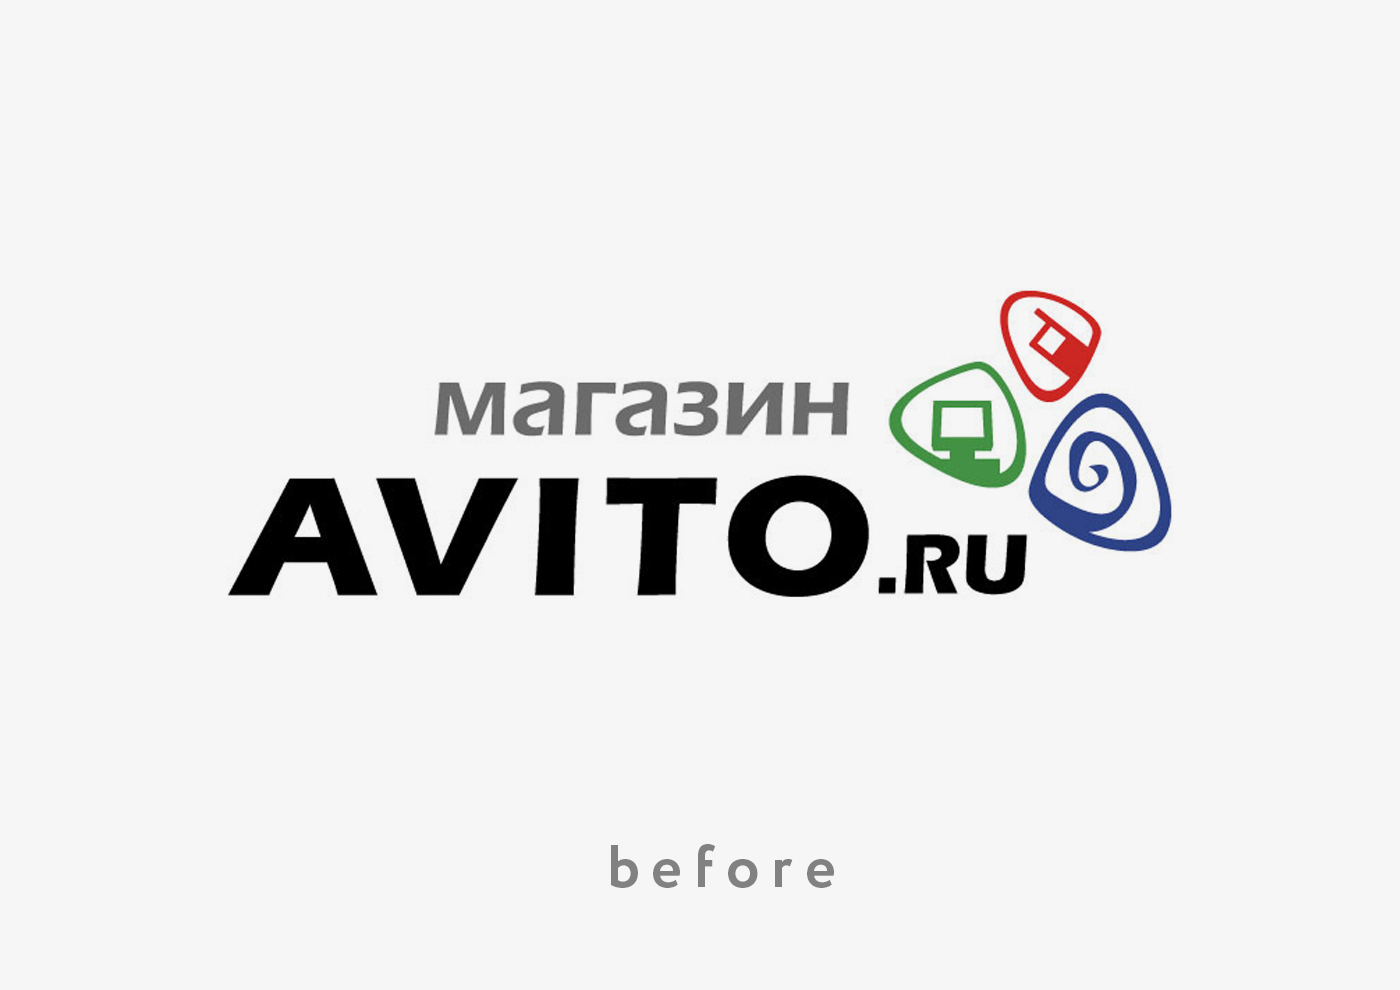 Сайт интернет авито. Авито. Авито логотип. Авито.ру Москва. Avito значок.